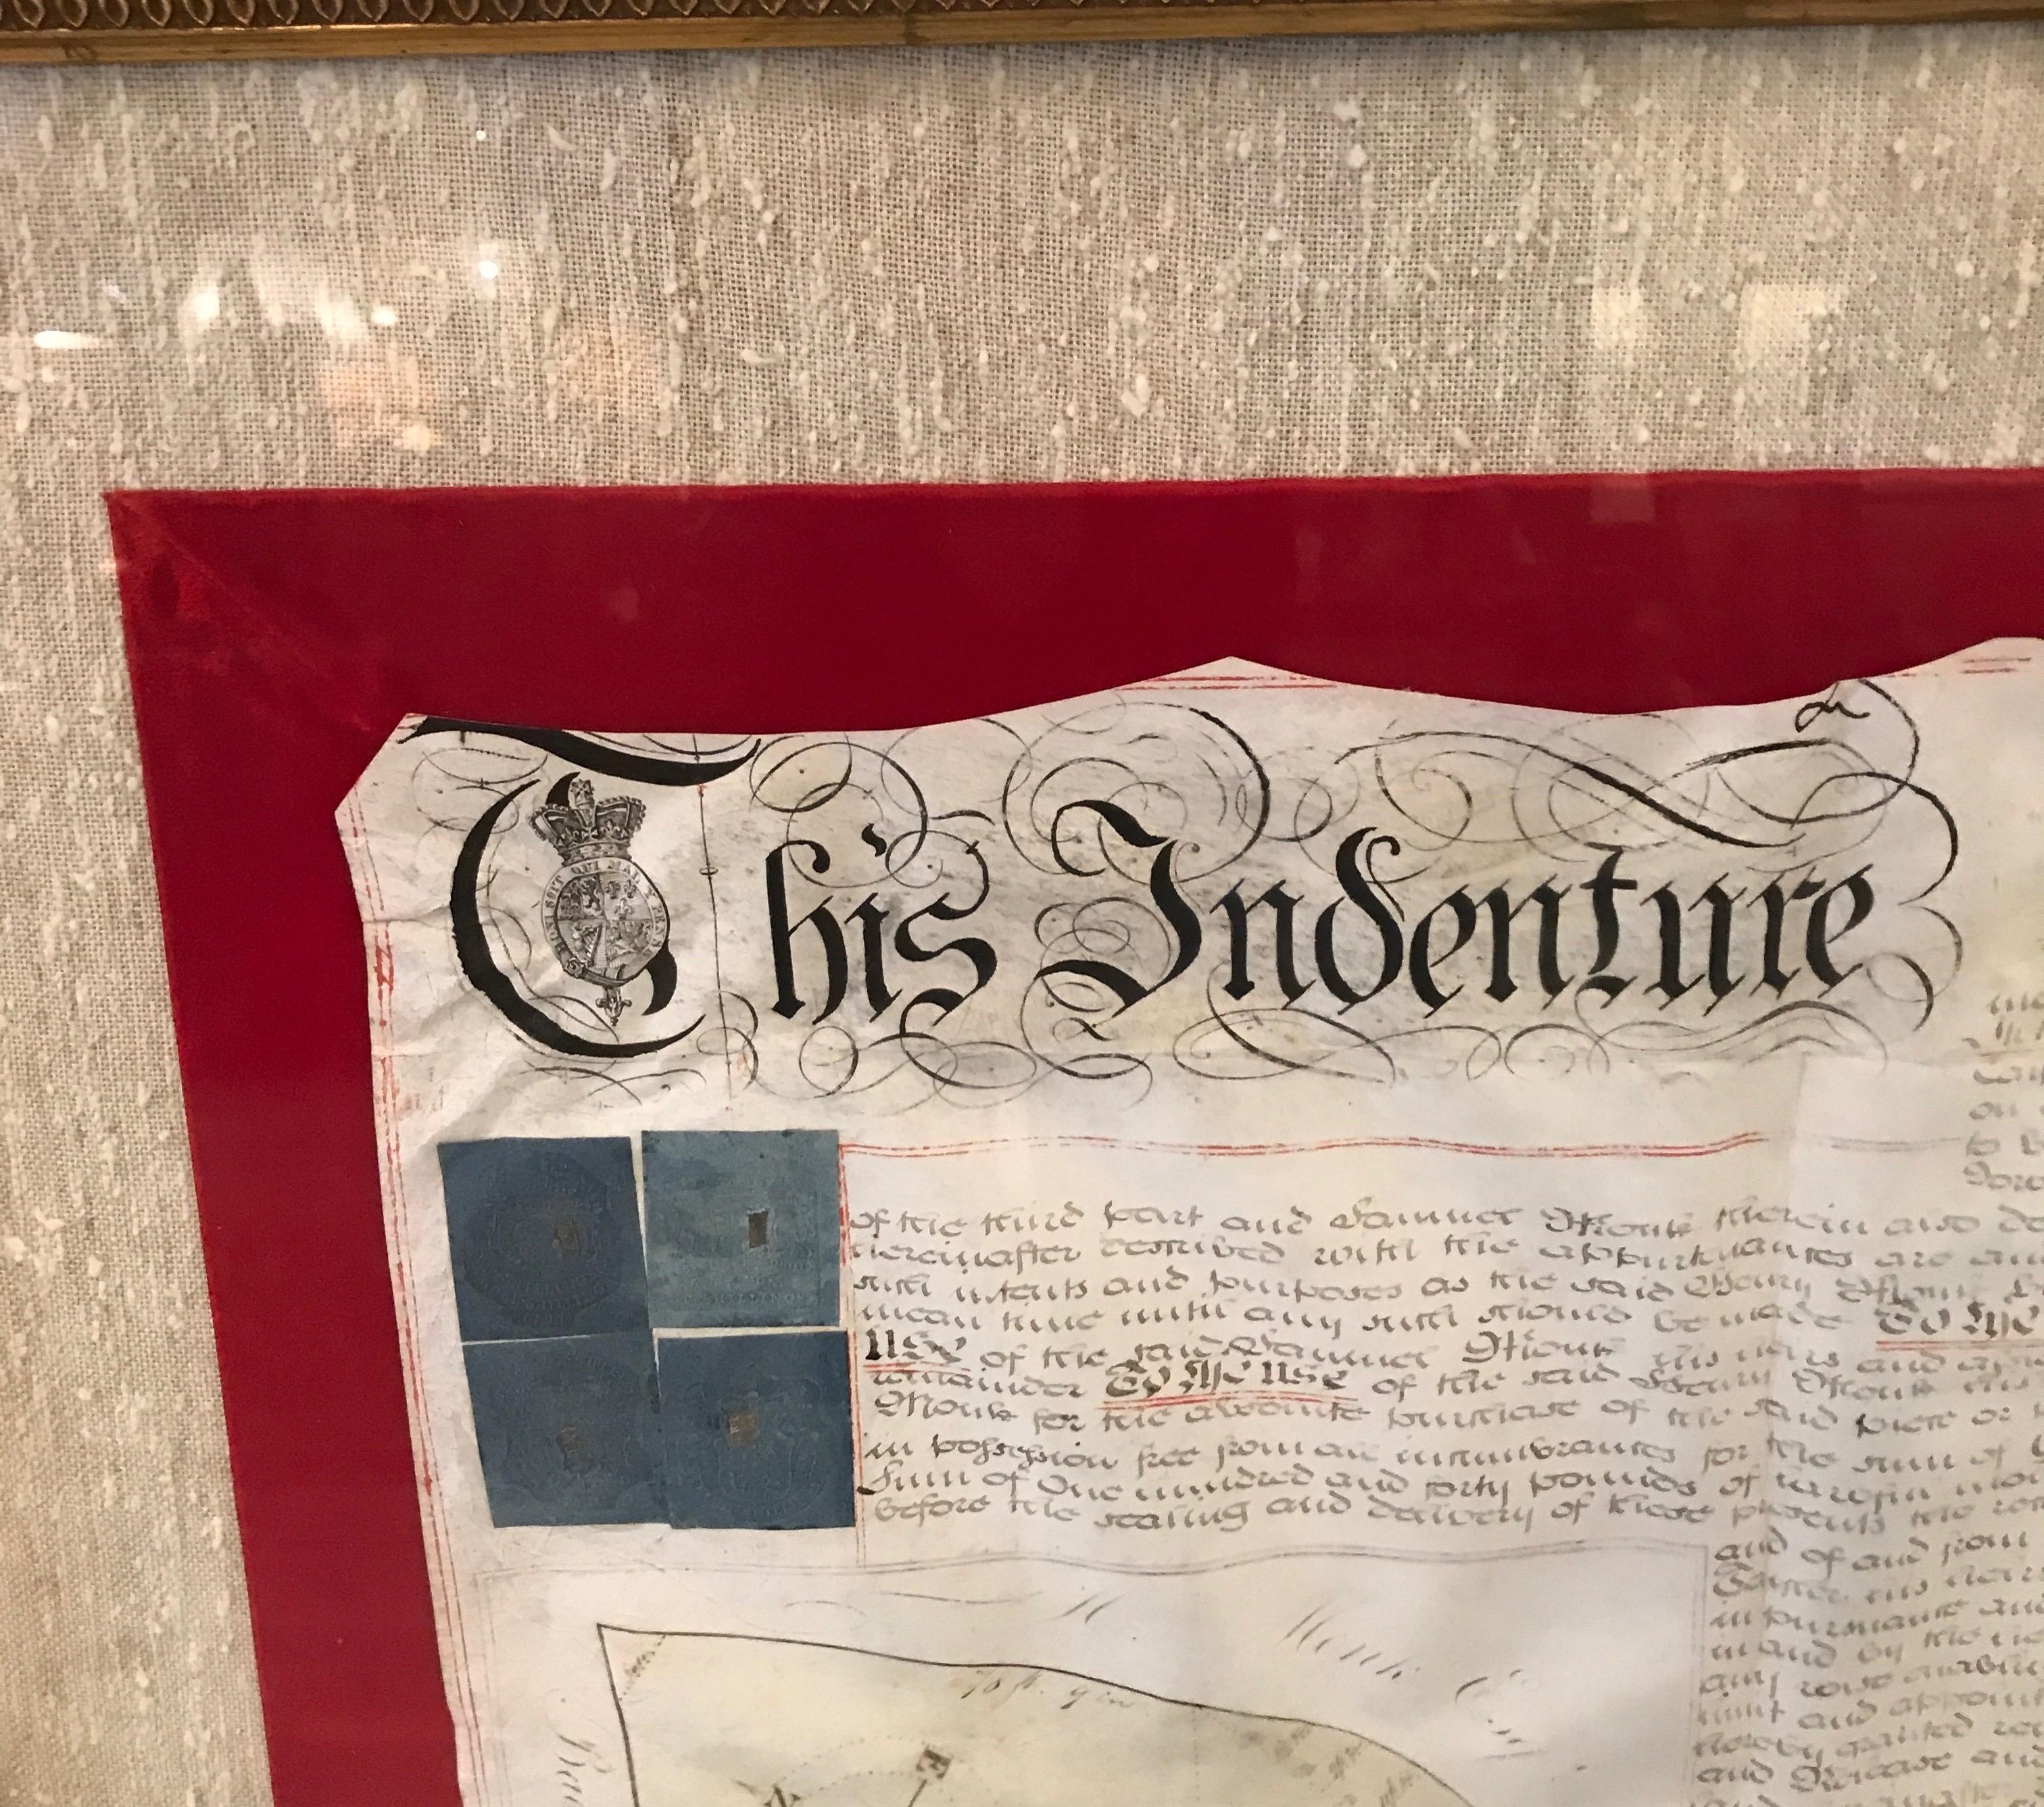 Un grand document manuscrit d'acte de propriété foncière, Angleterre, 1810, encadré. Le document magnifiquement écrit à la main est monté sur carton avec une bordure en velours rouge et un passe-partout en soie tissée à la main. Le document est